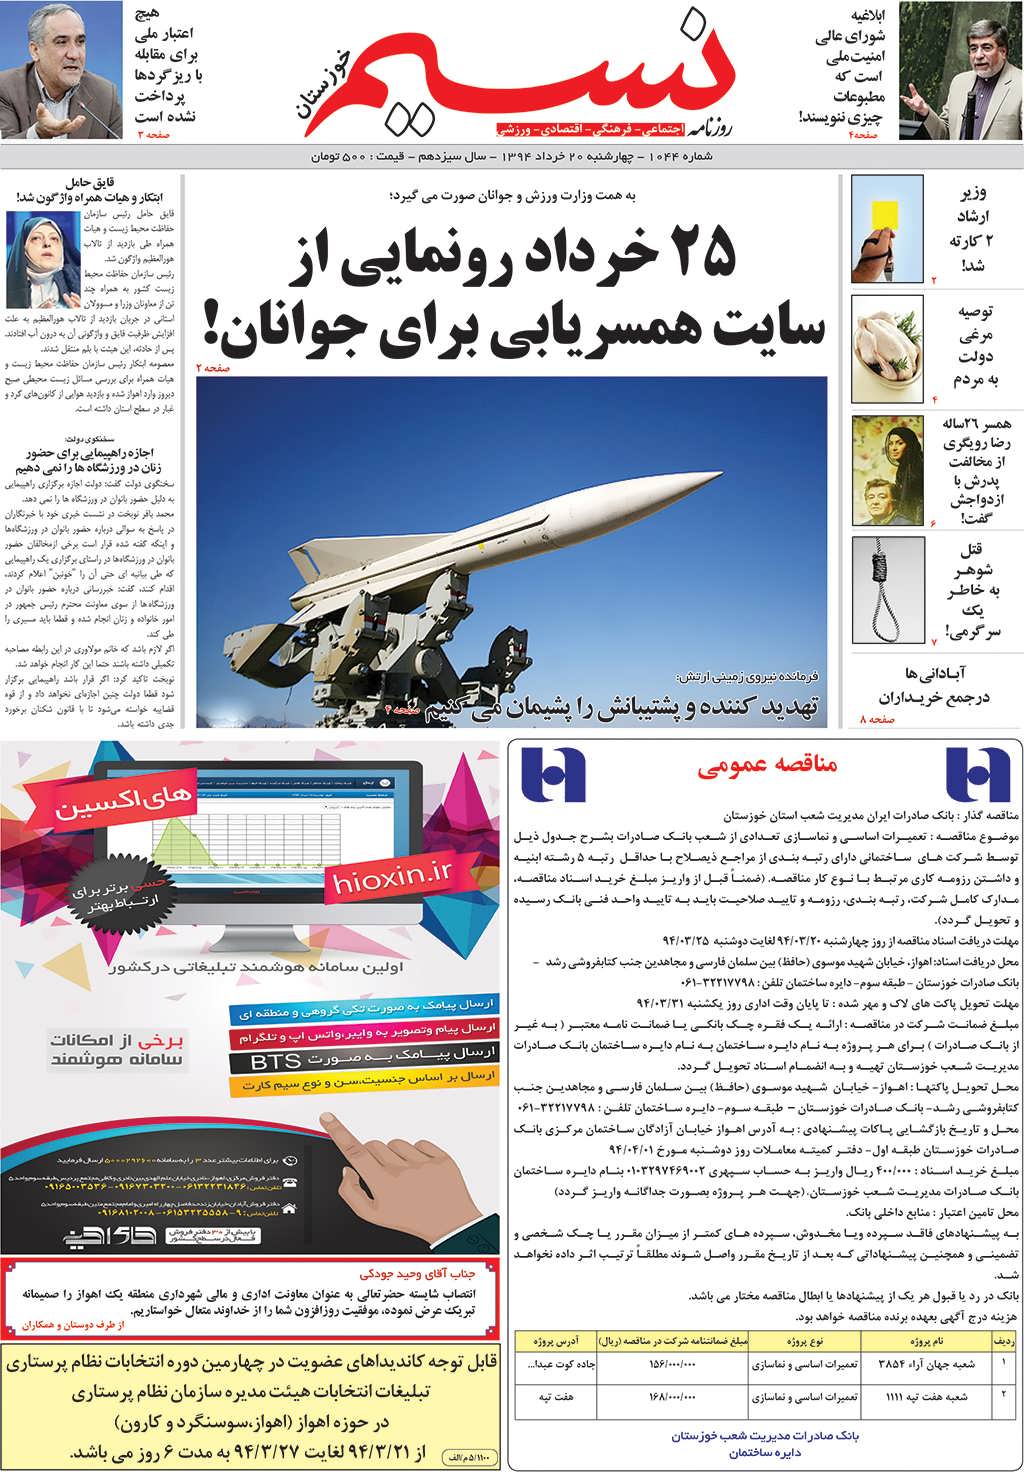 صفحه اصلی روزنامه نسیم شماره 1044